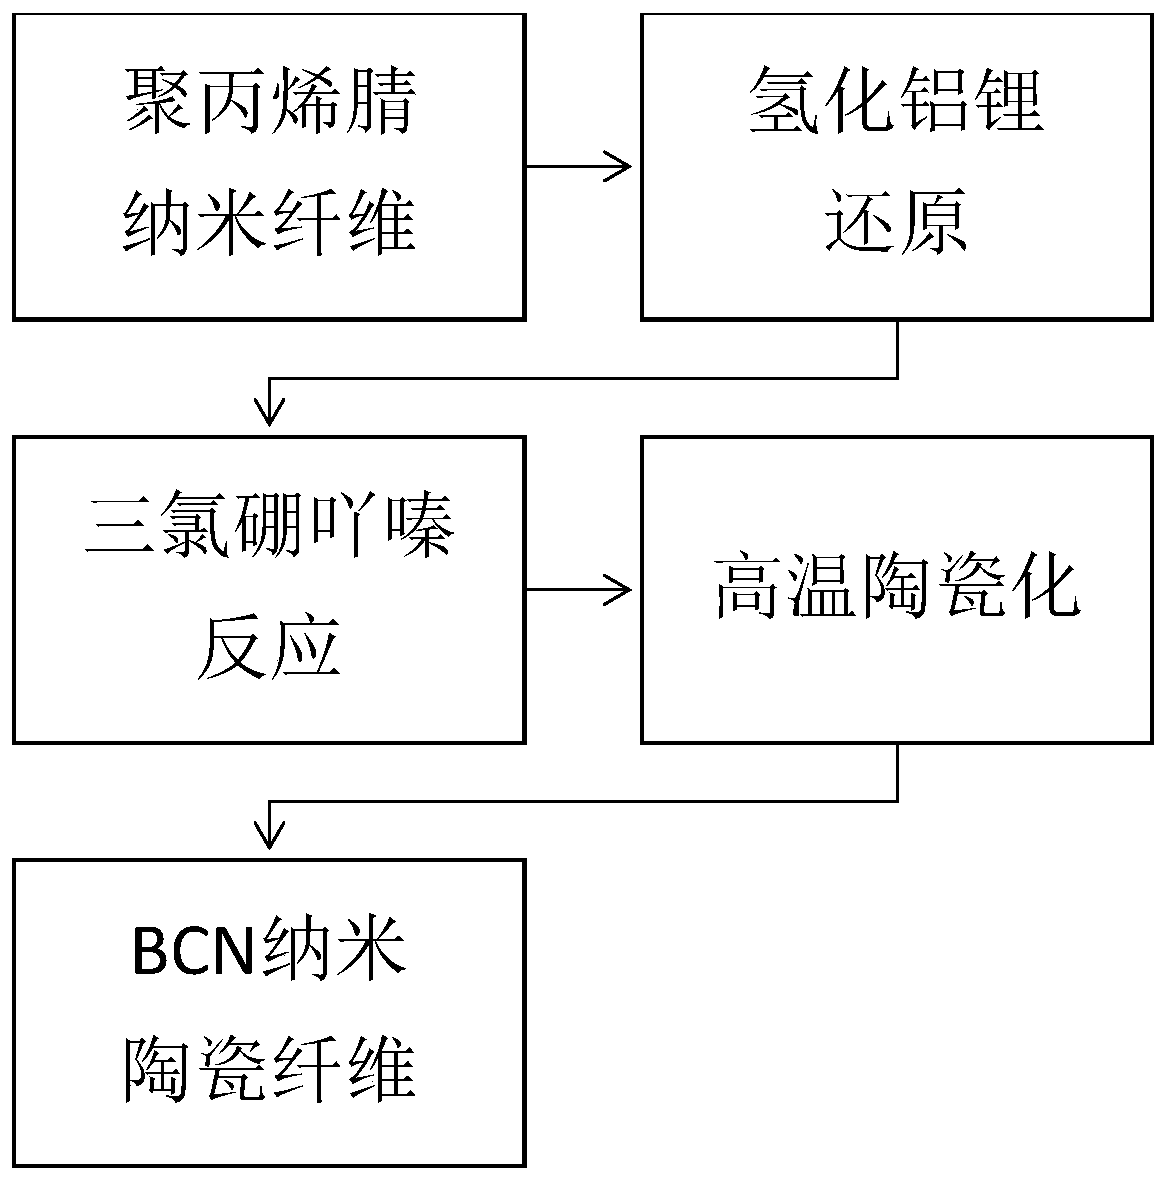 Preparing method of BCN ceramic fiber